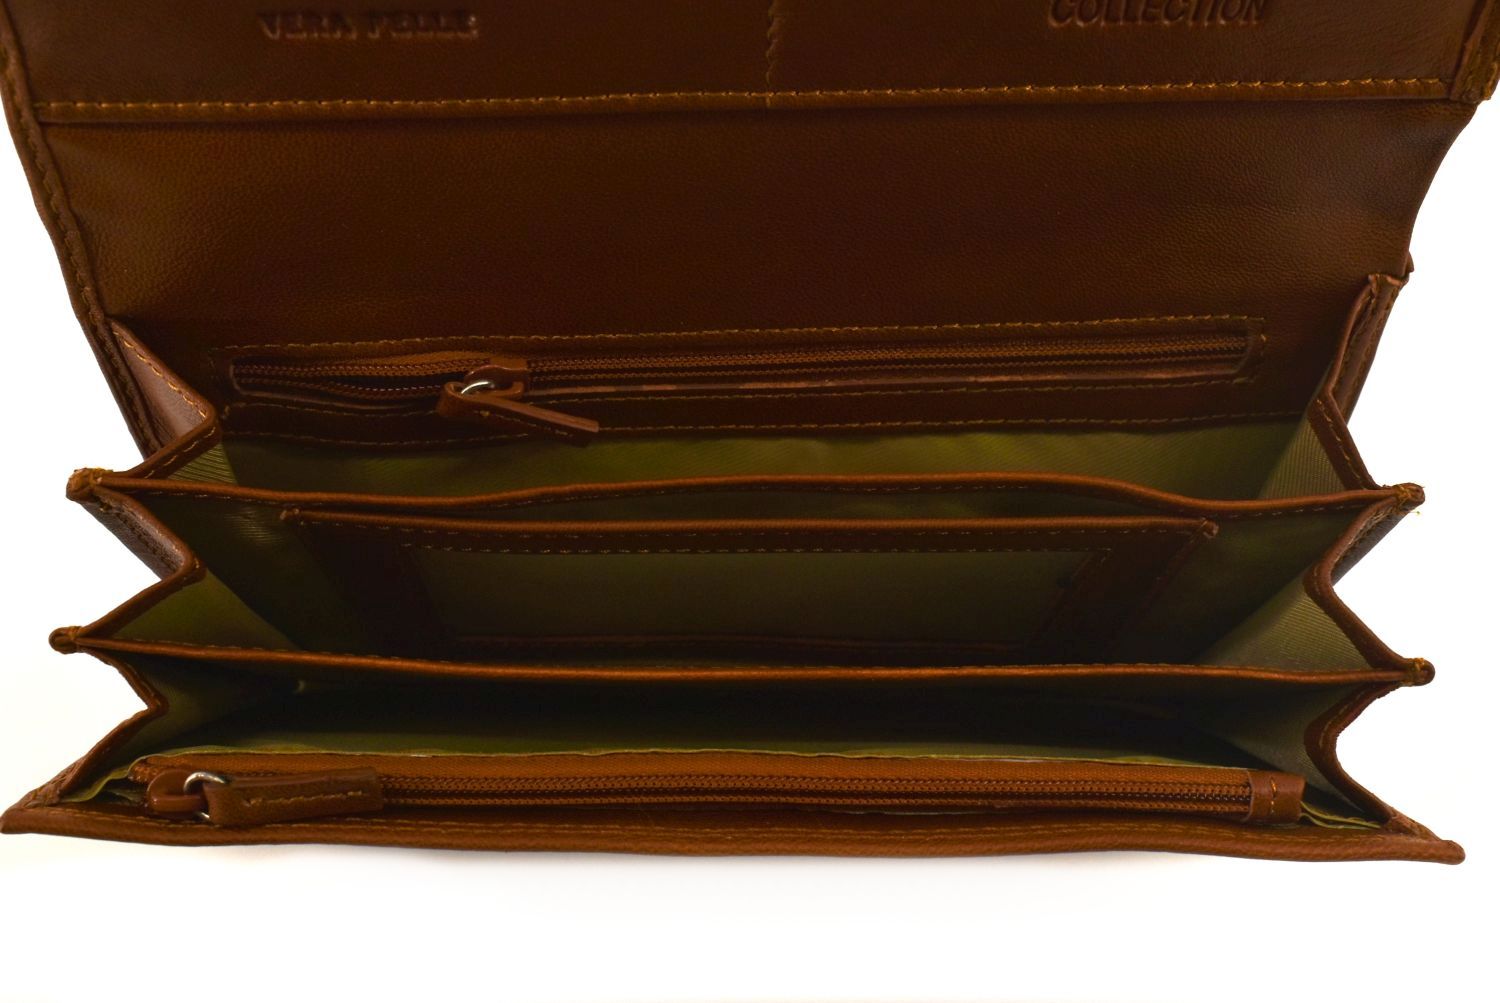 Dámská kožená peněženka Coveri Collection - černá 34606